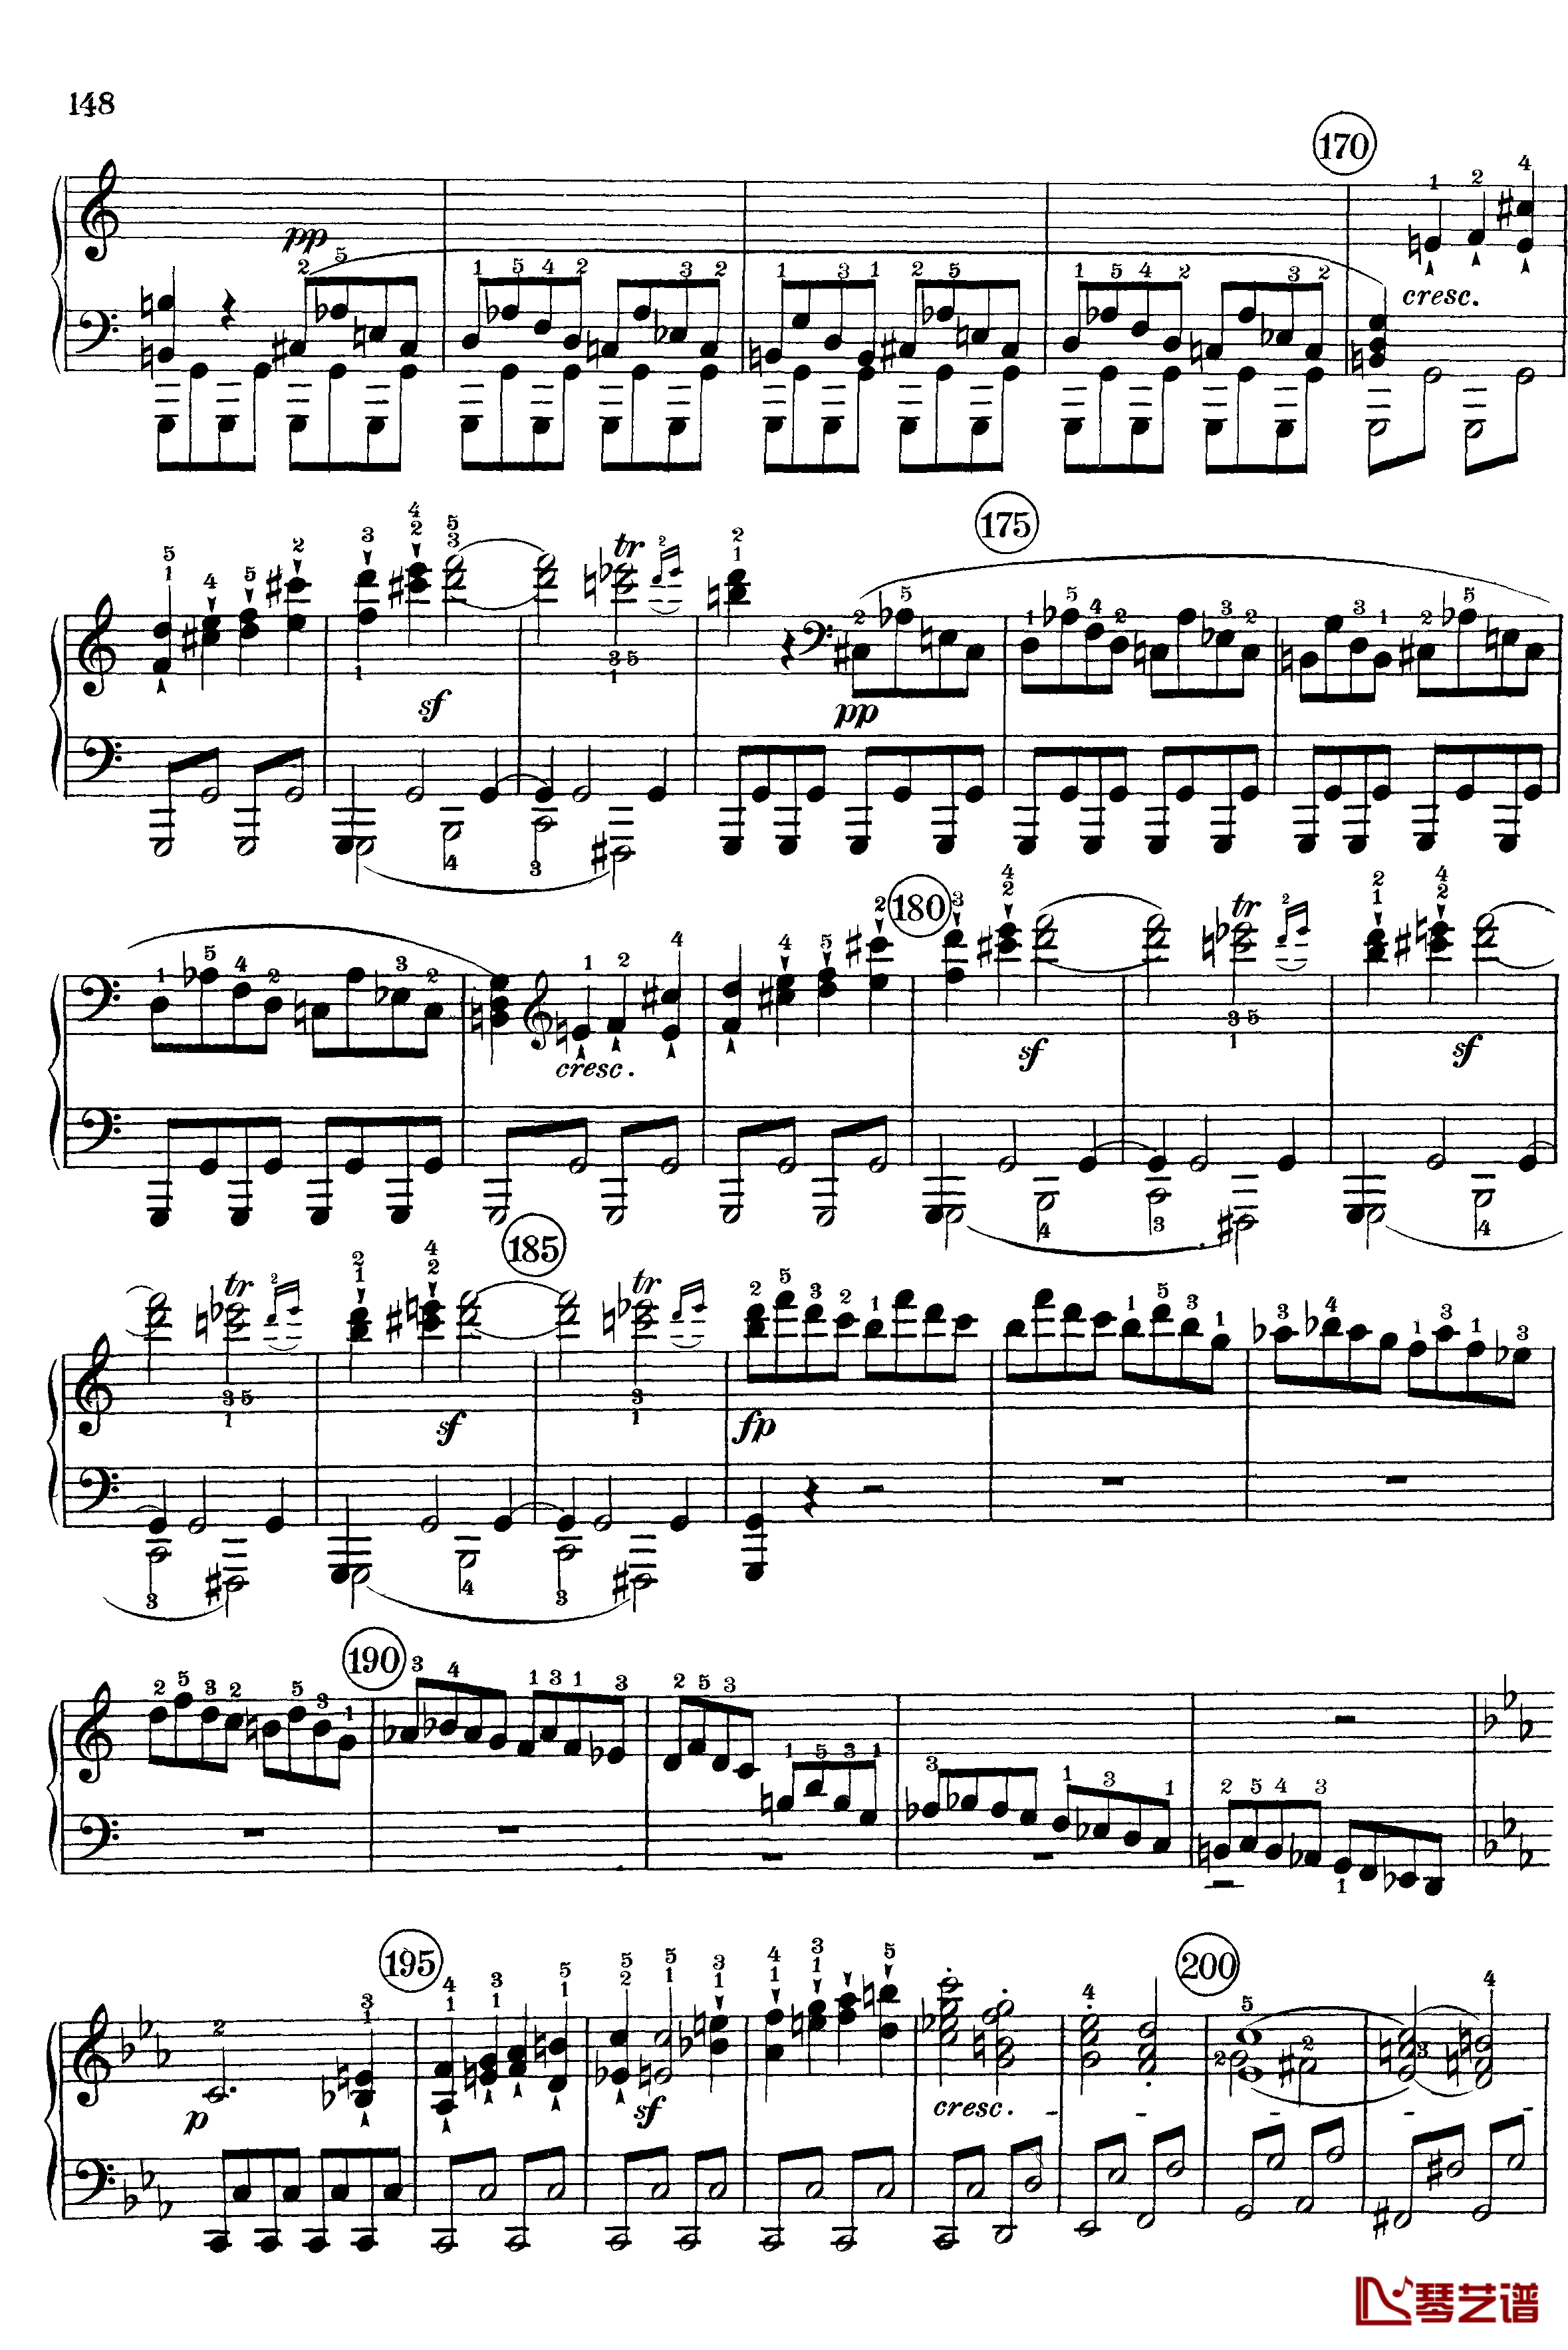 悲怆钢琴谱-c小调第八号钢琴奏鸣曲-全乐章-带指法版-贝多芬-beethoven6